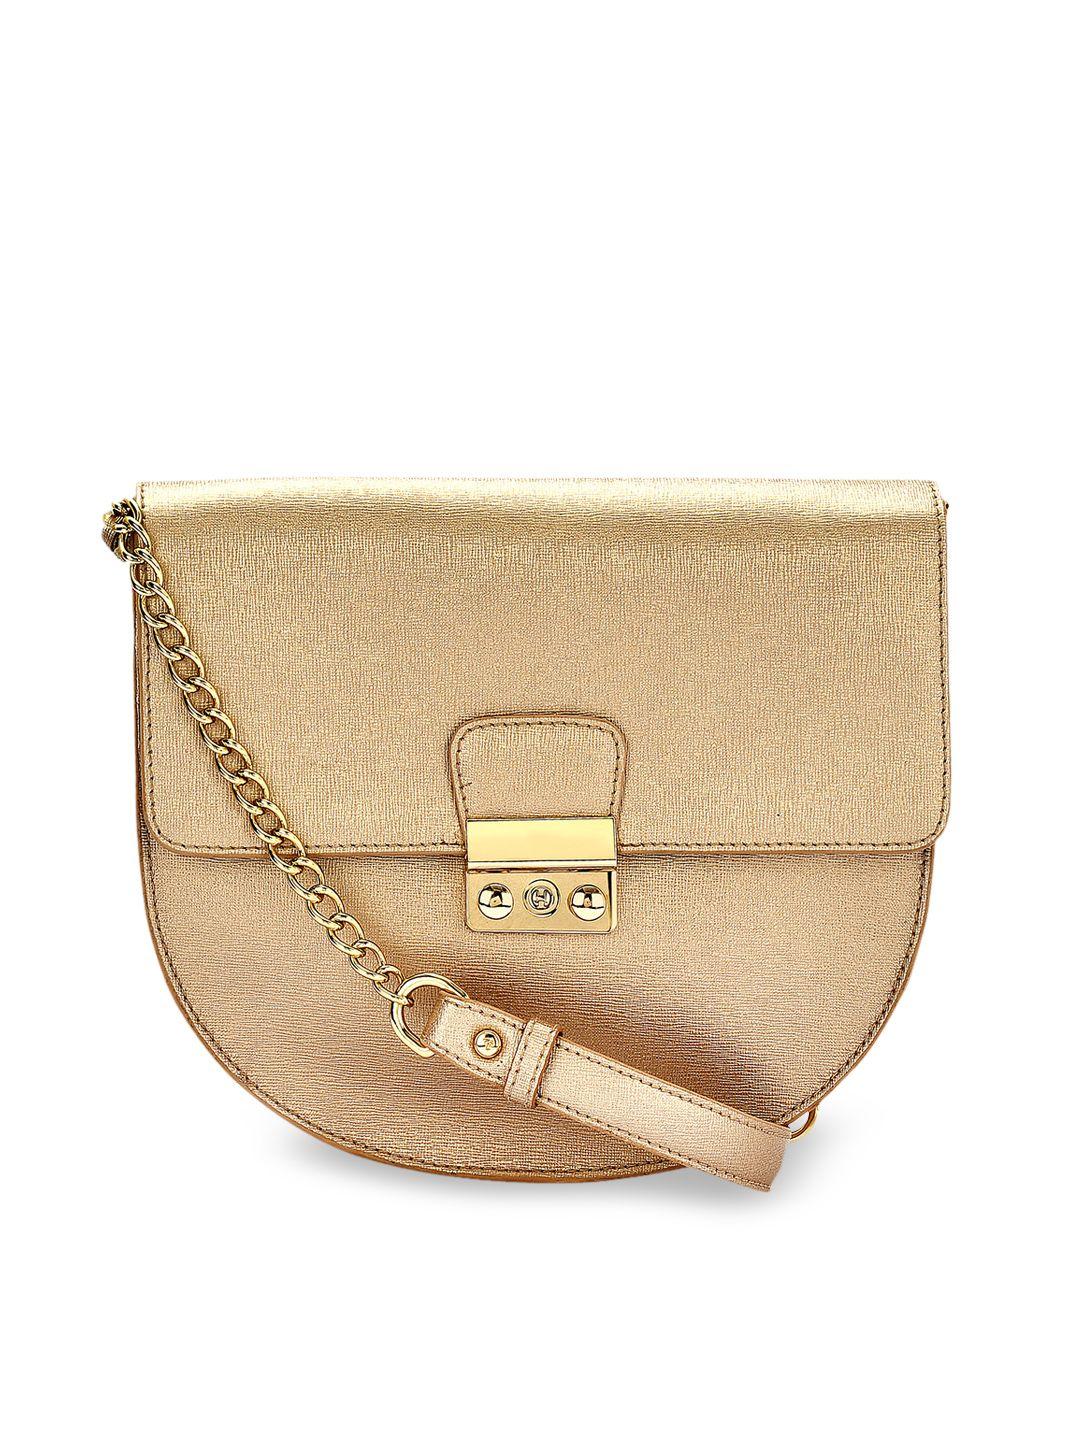 eske women gold-toned textured leather sling bag